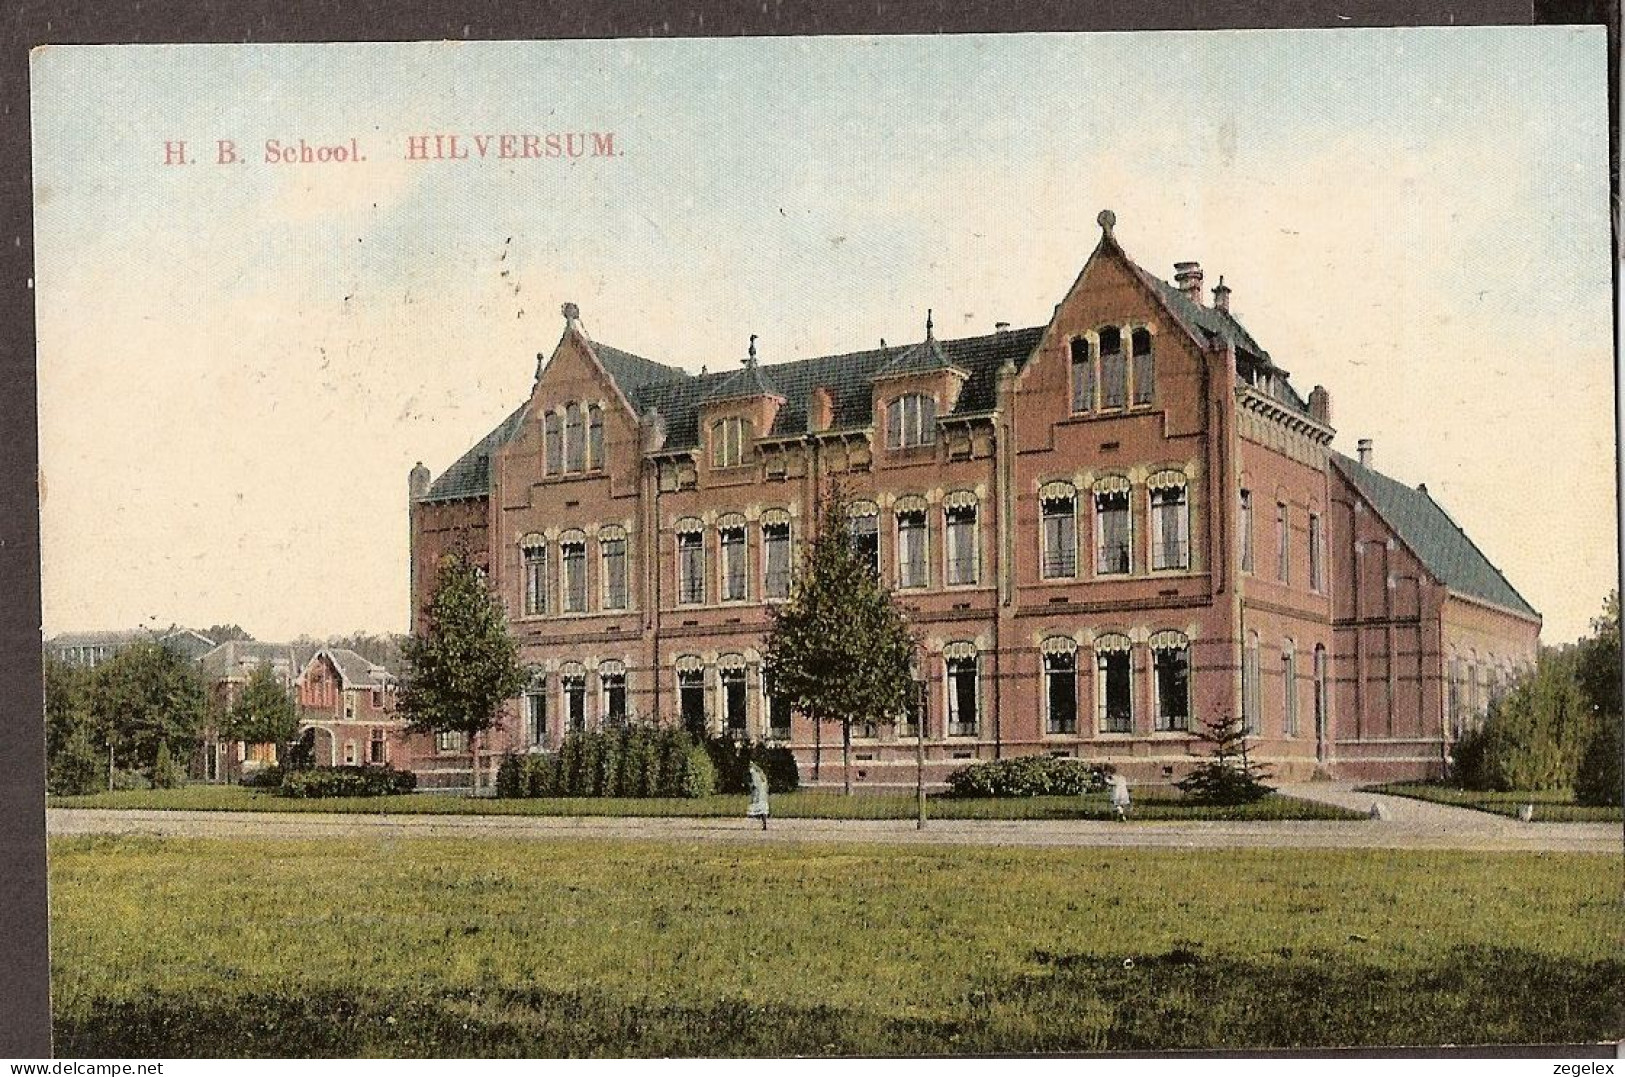 Hilversum 1920 - H.B. School - Hilversum